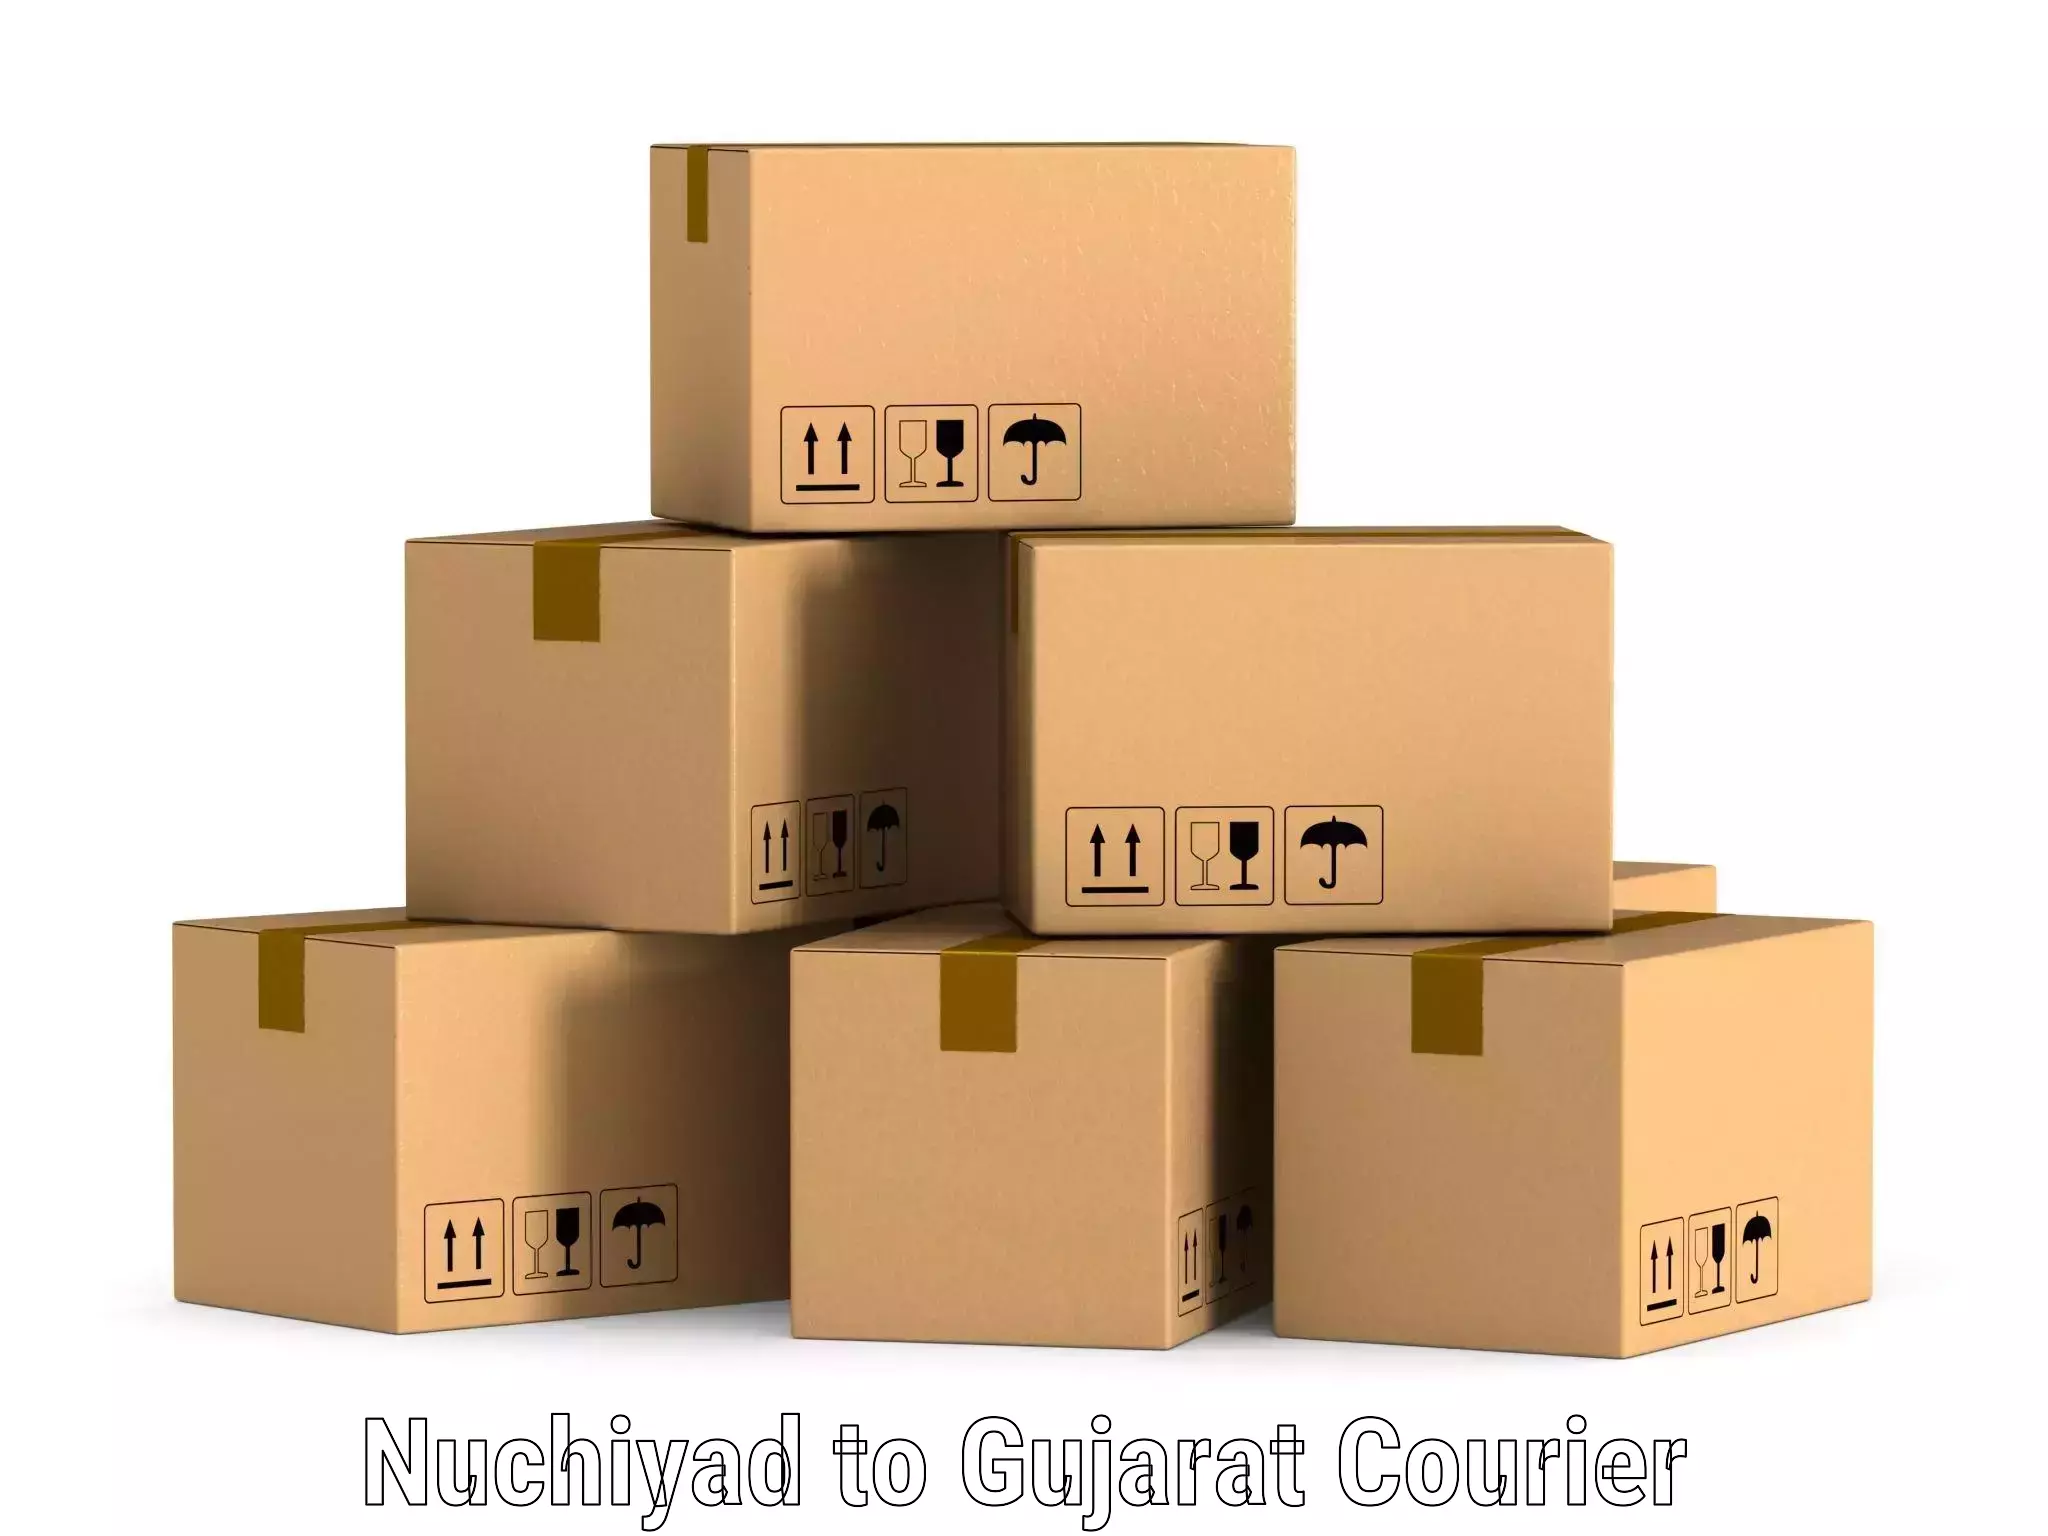 Global shipping solutions Nuchiyad to Jamnagar